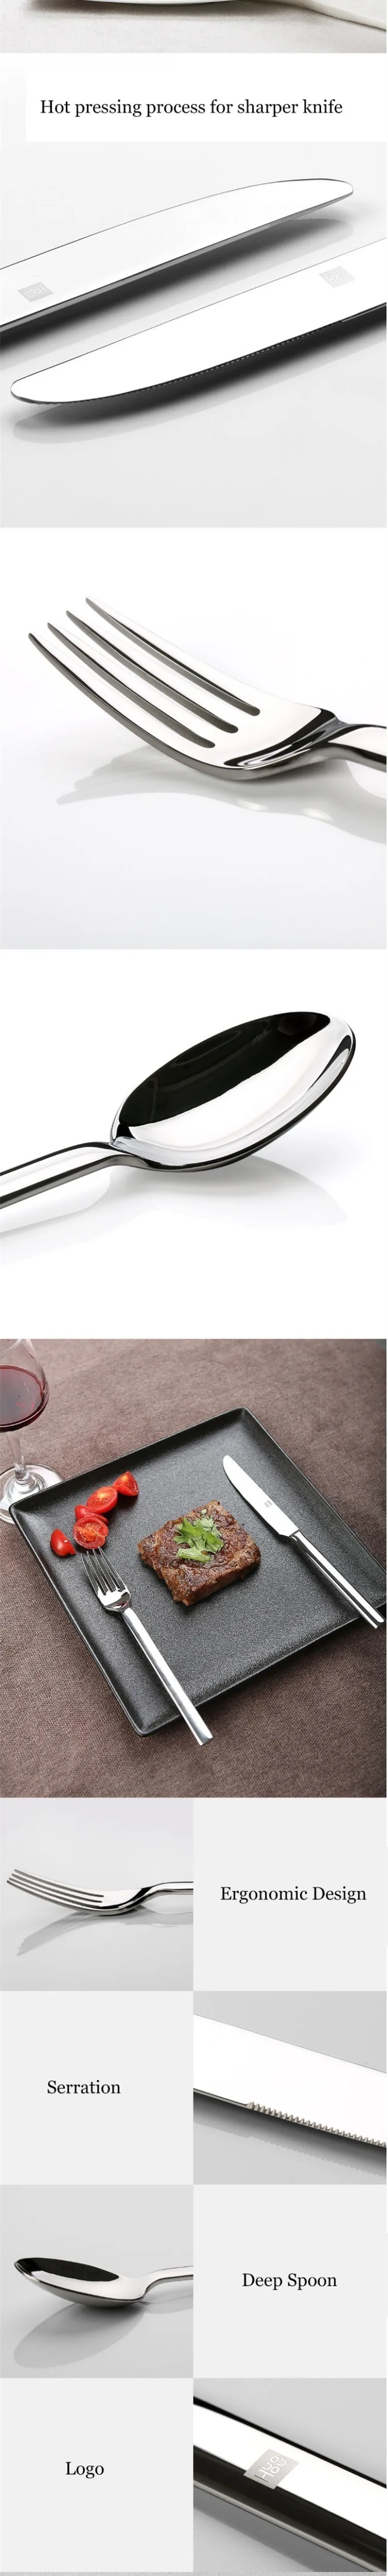 Набор столовых приборов Xiaomi Mijia Huohou, ножи ложки, вилки, столовые приборы из нержавеющей стали, столовые приборы